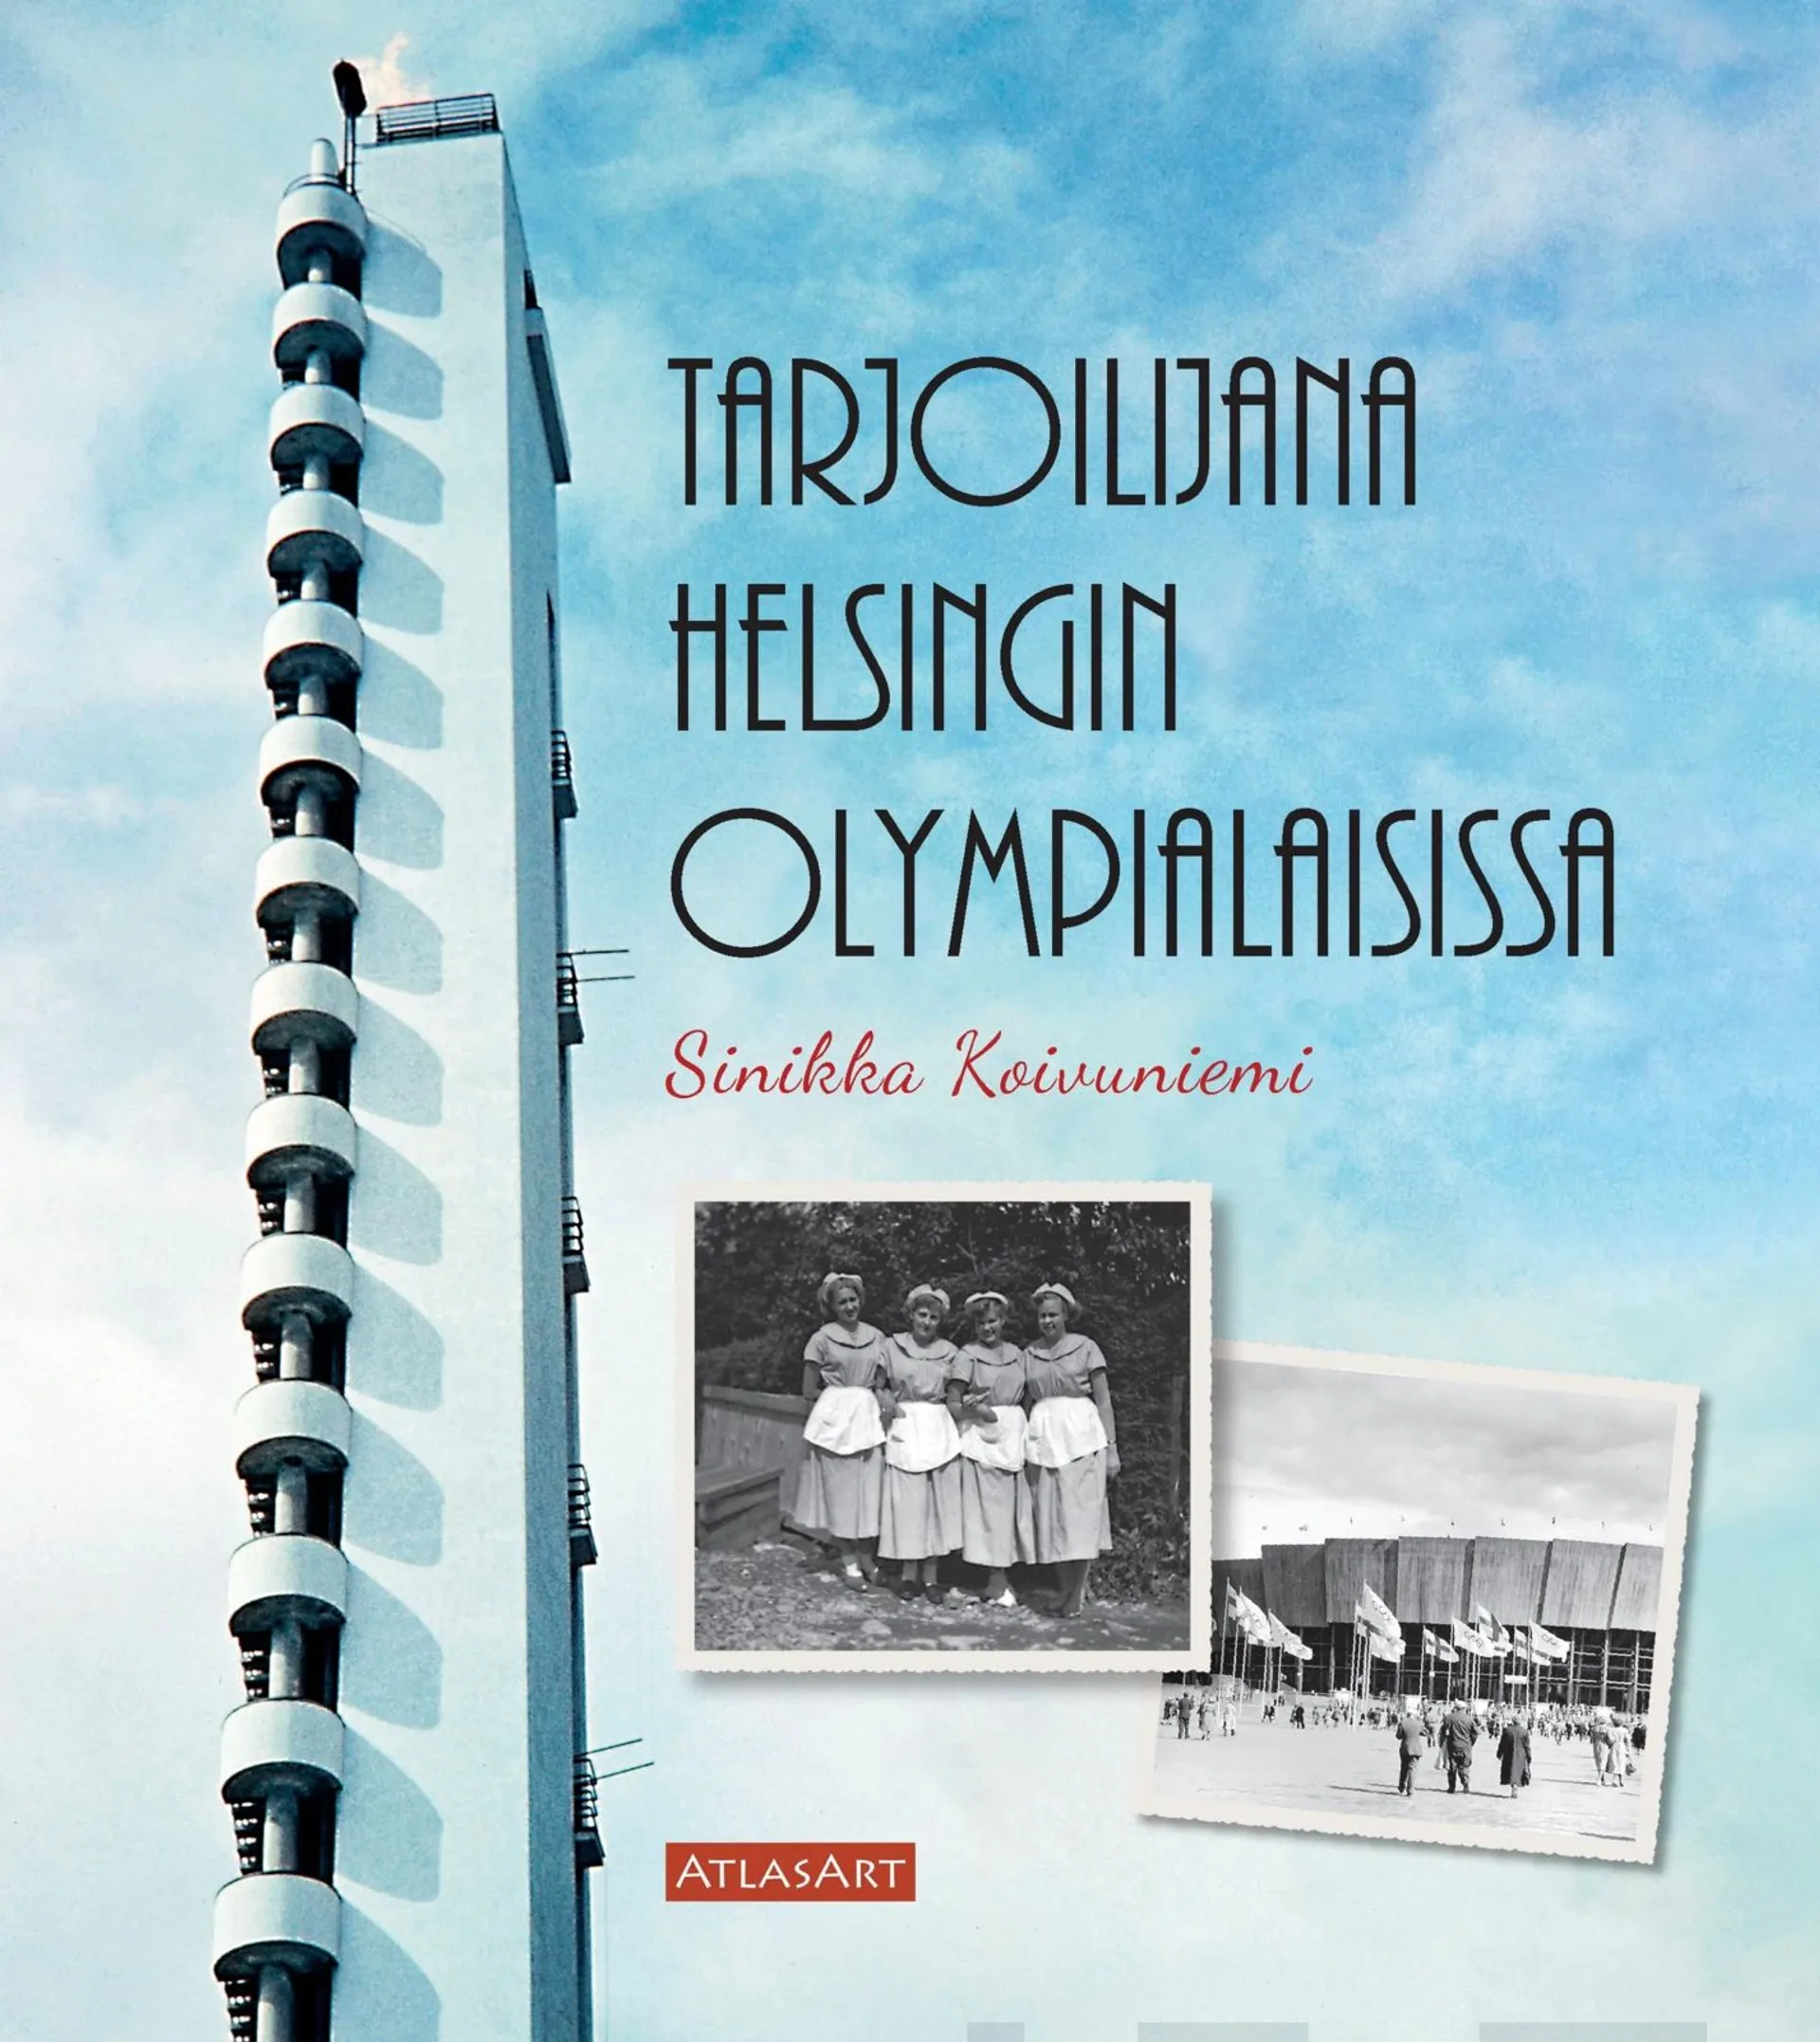 Koivuniemi, Tarjoilijana Helsingin Olympialaisissa